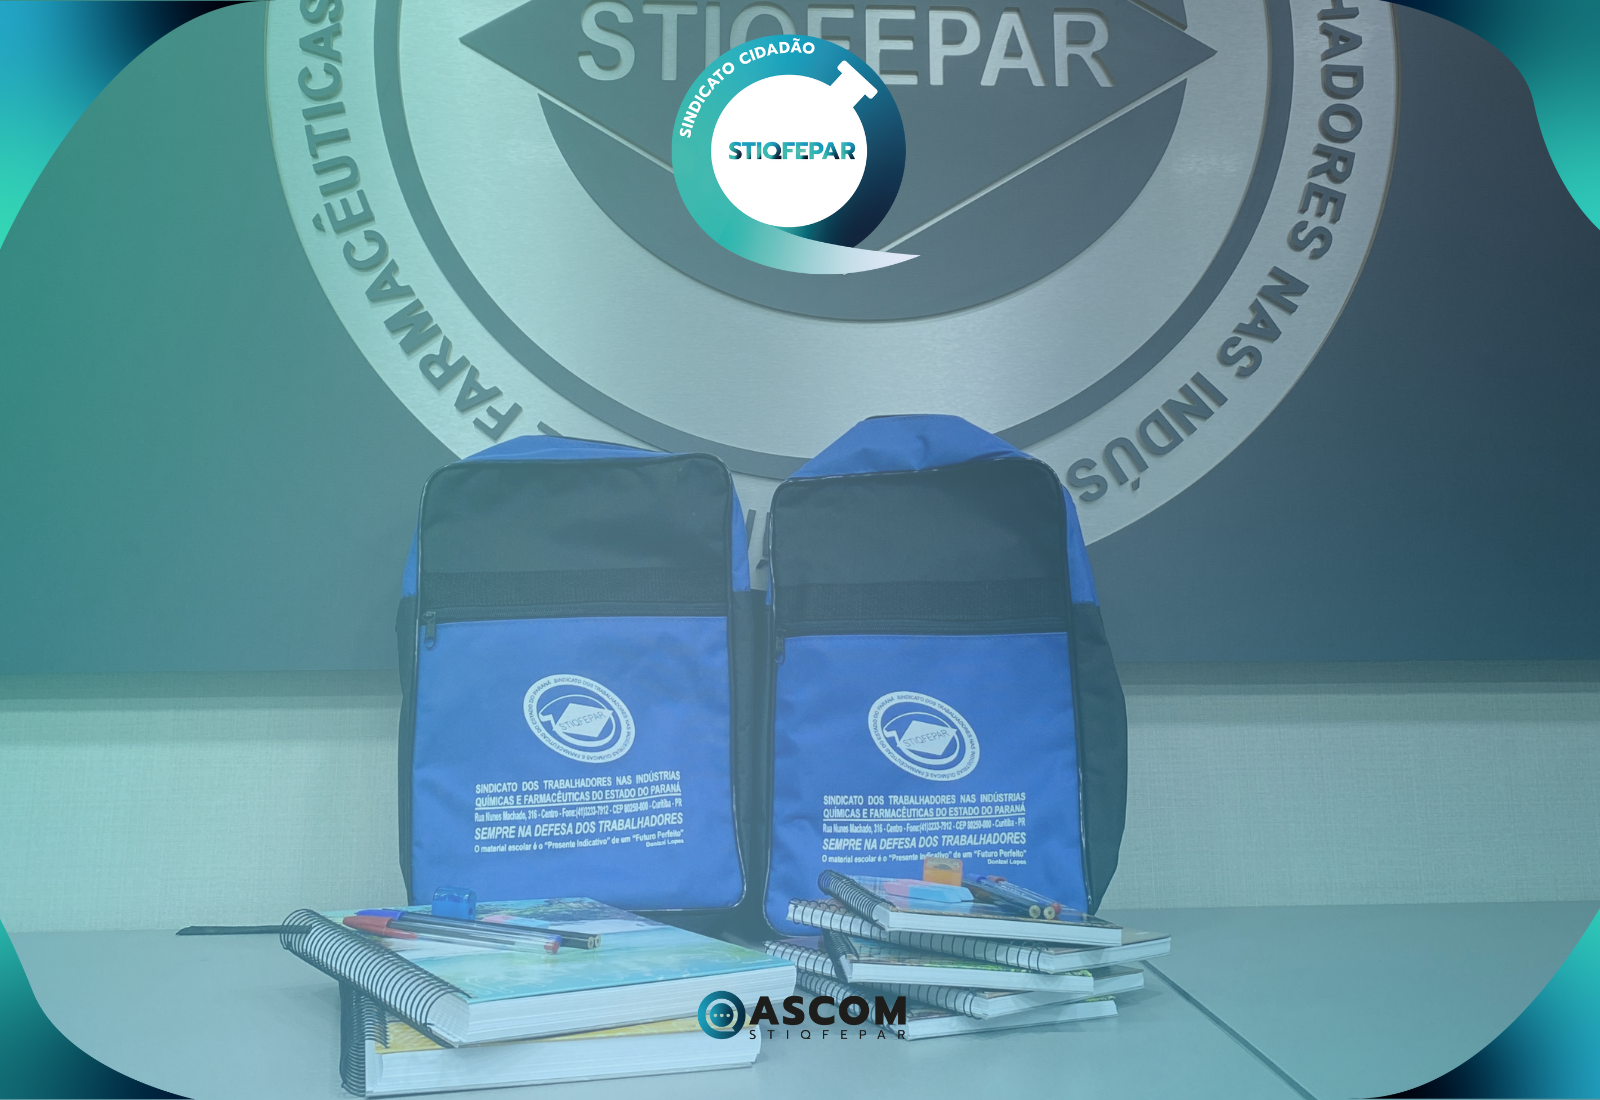 Stiqfepar entrega kit de material escolar para associados, associadas e seus dependentes